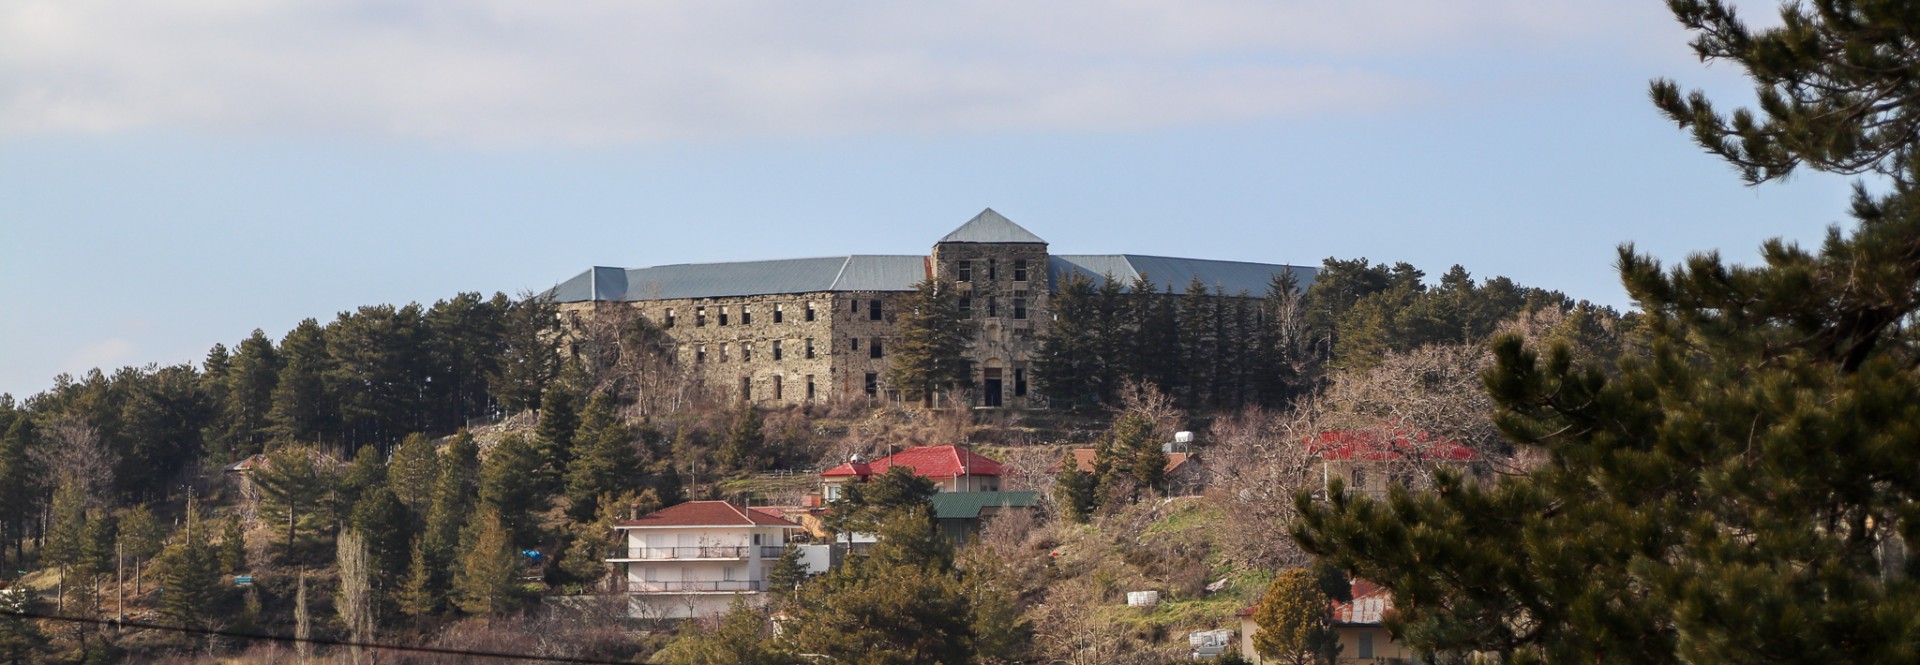 Veregaria Hotel högt på kullen i Prodromos med panoramavyer